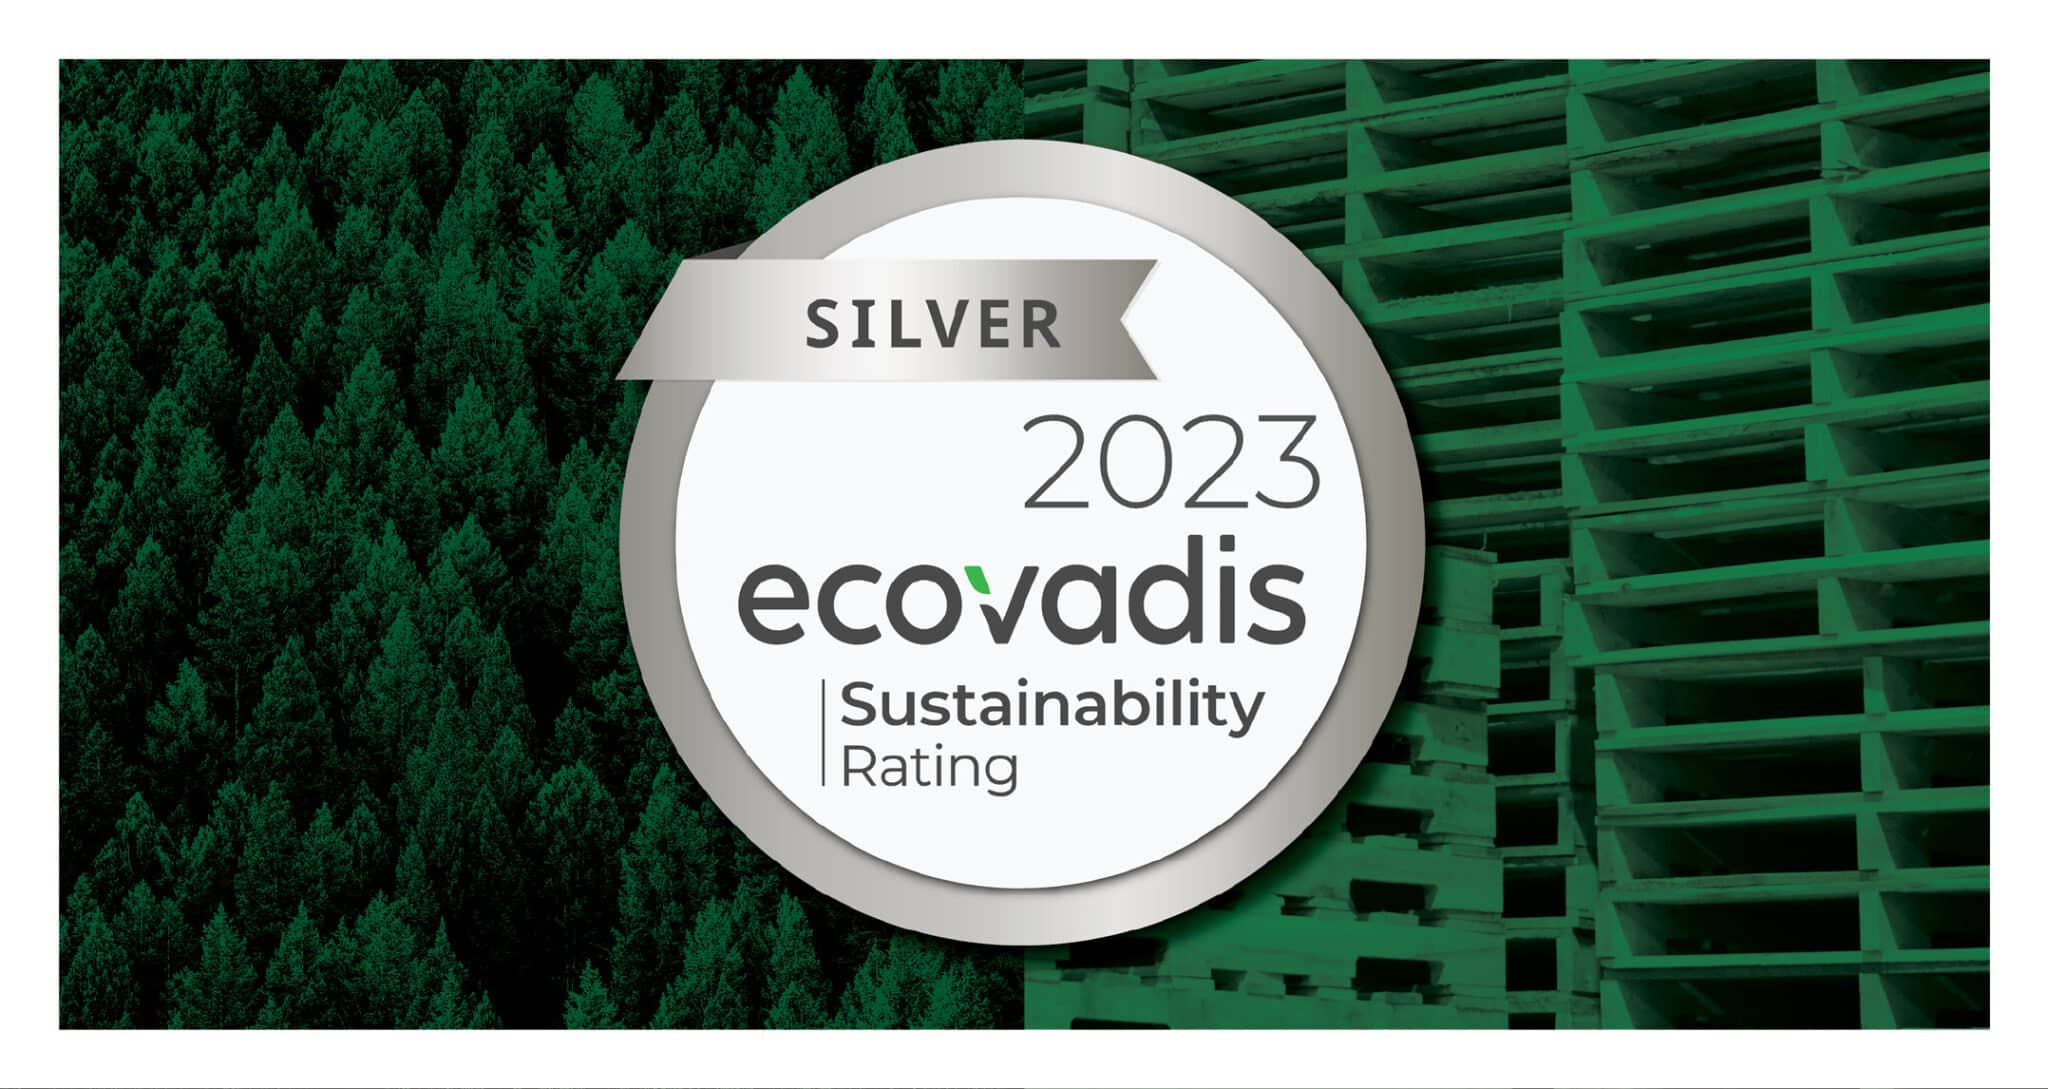 Silver environmental scorecard medal